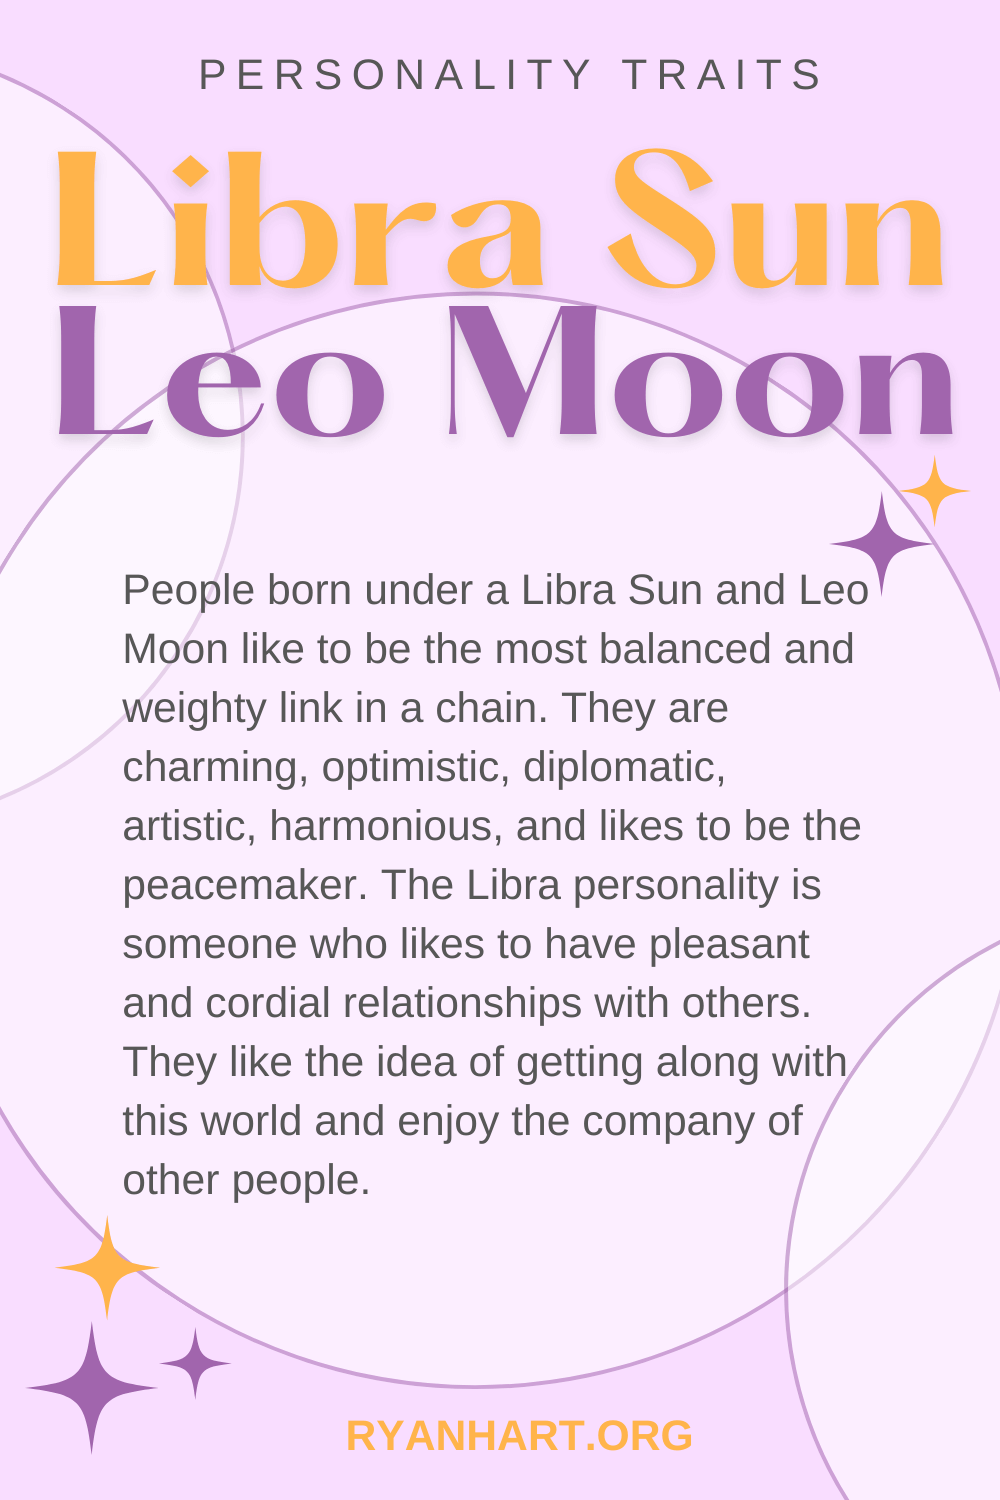  Libra Sun Leo Moon ပင်ကိုယ်စရိုက်လက္ခဏာများ